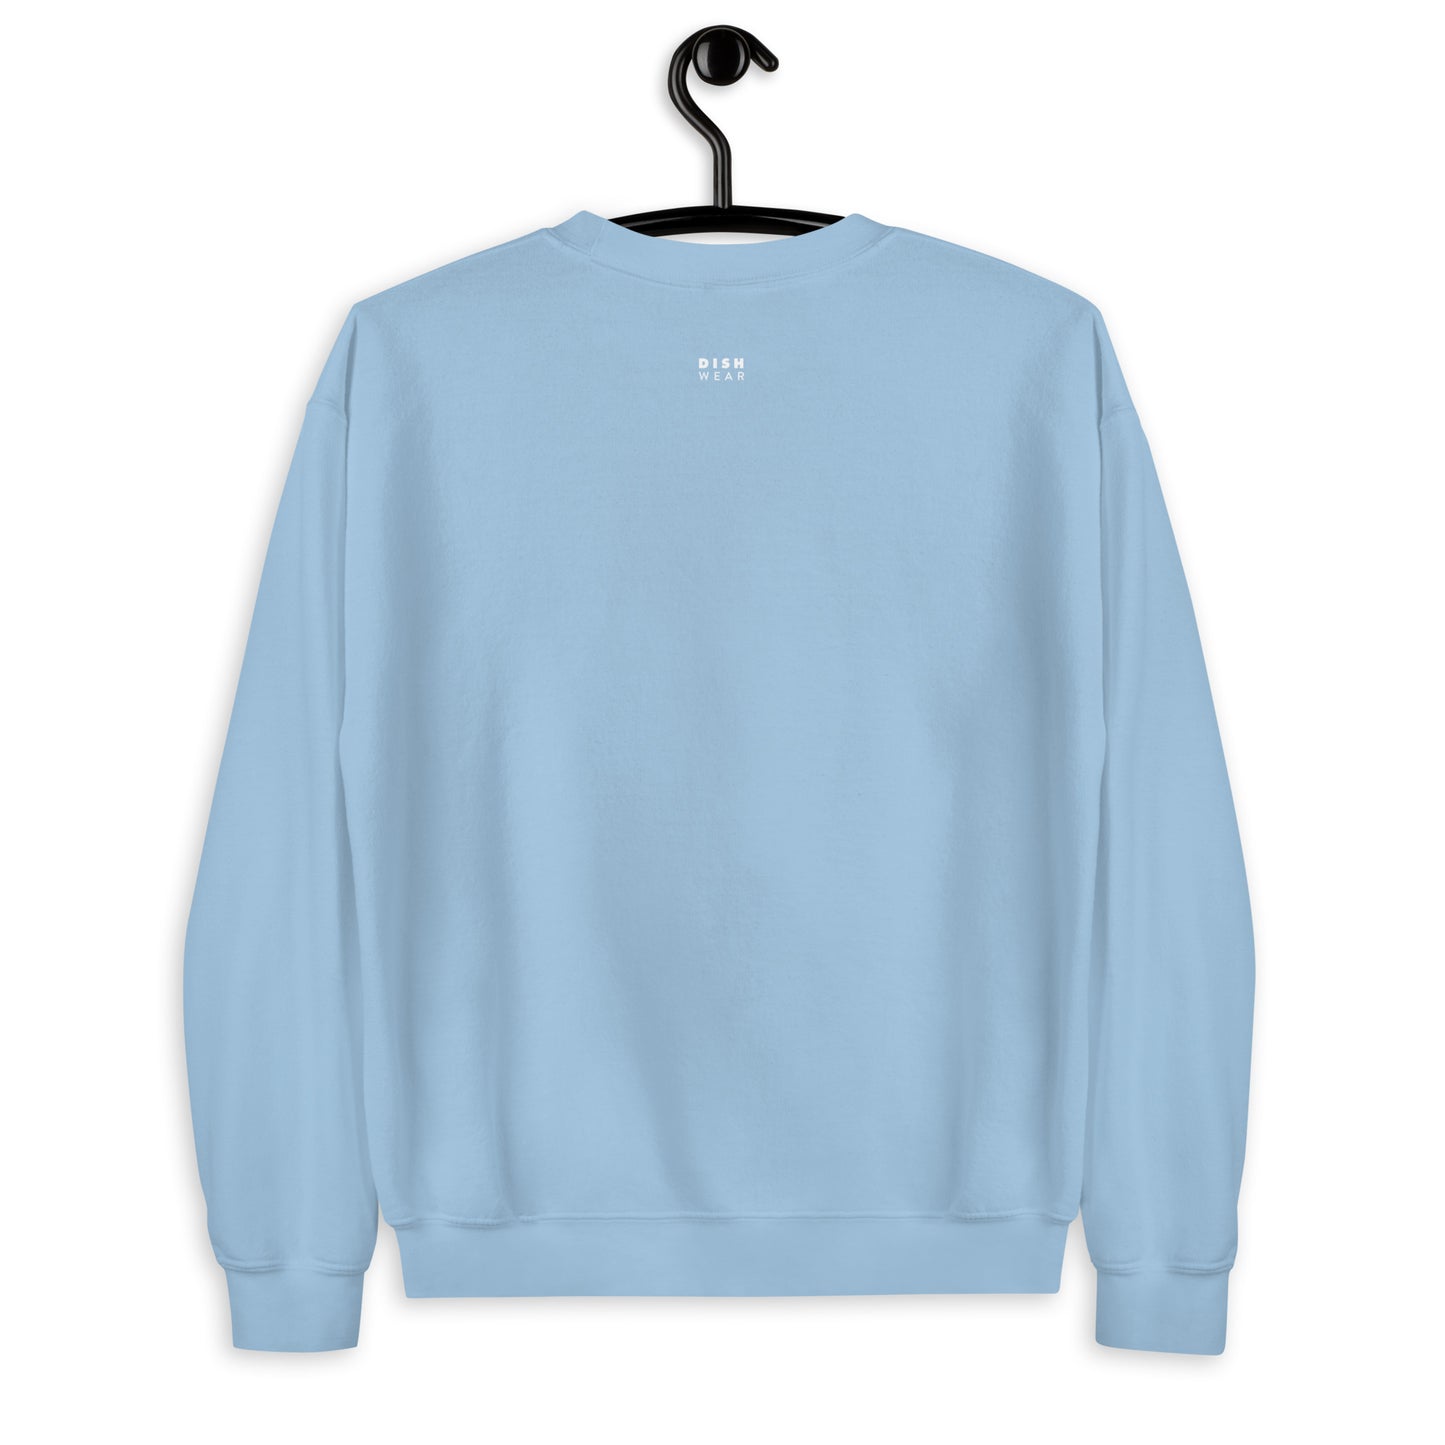 Sauv Blanc Sweatshirt - Straight Font